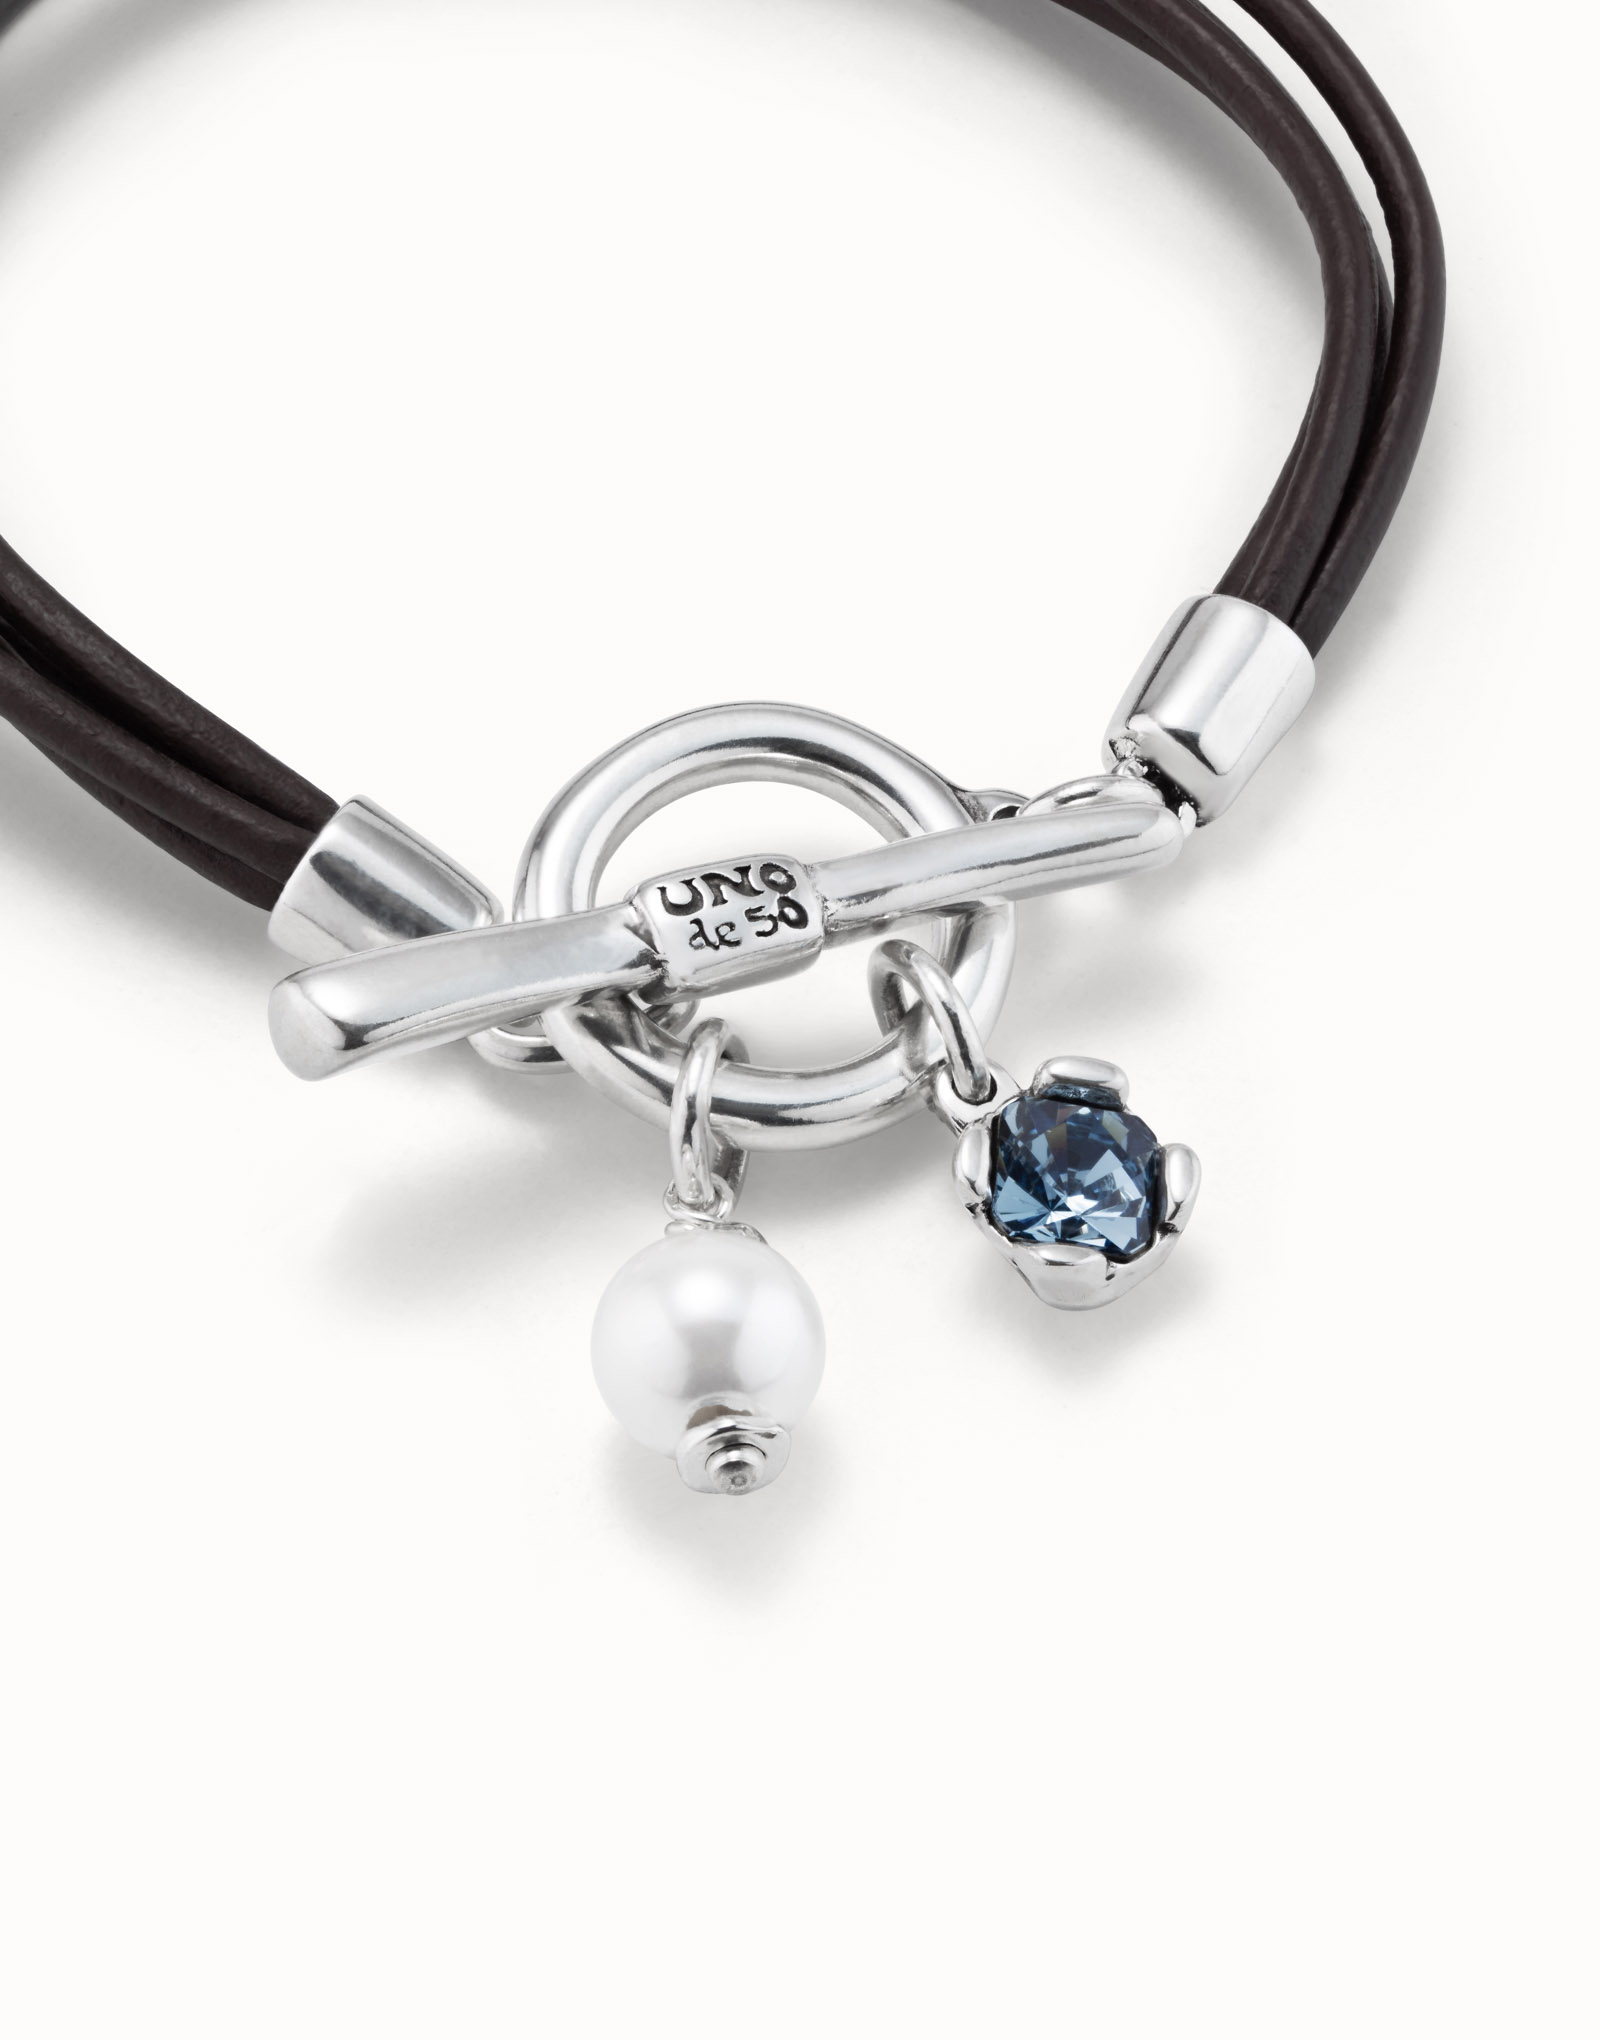 Bracelet en cuir plaqué argent avec charmes, cristaux et perle, Argent, large image number null